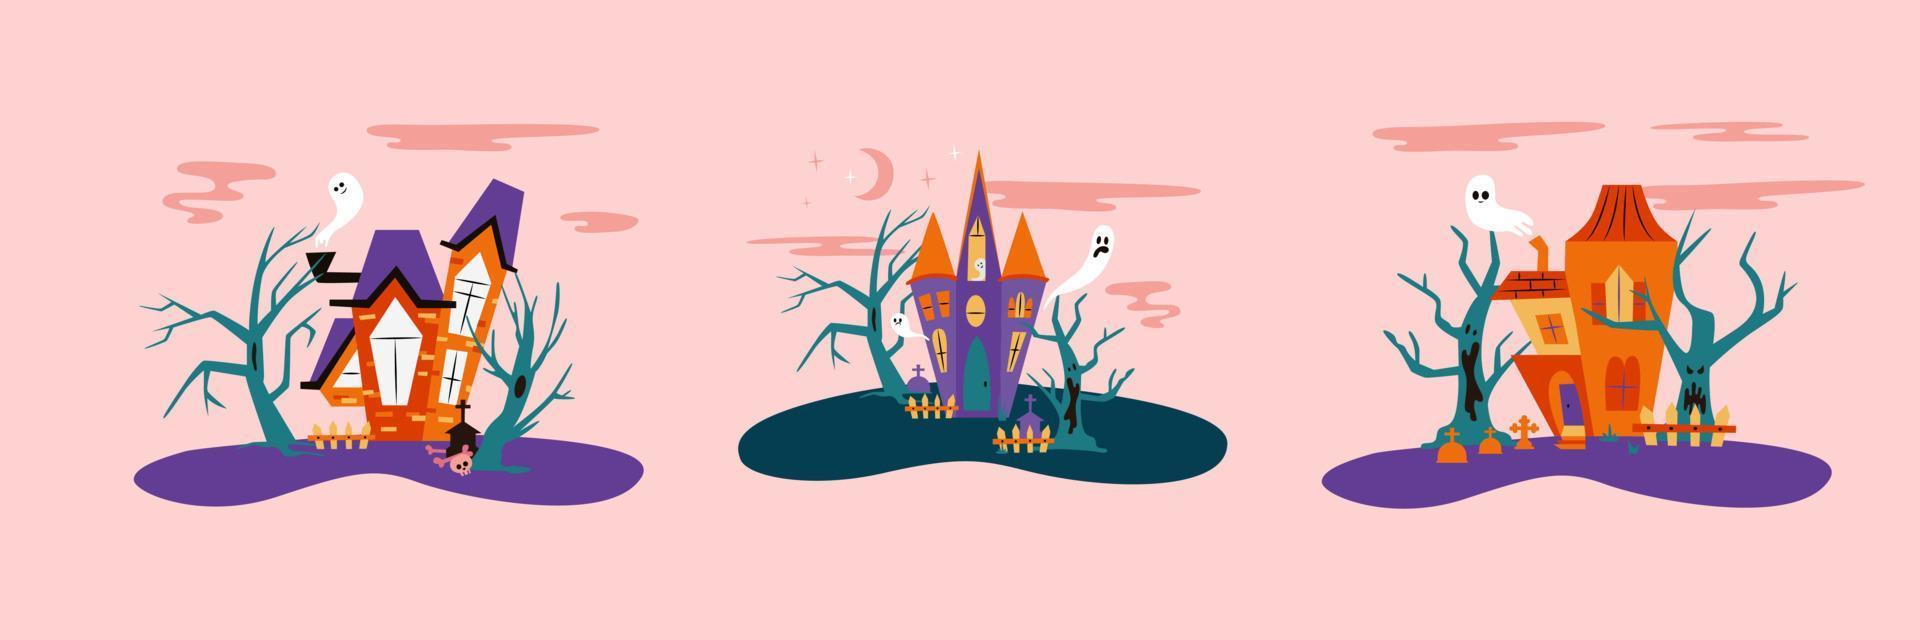 les maisons chassées d'halloween définissent une illustration vectorielle avec des arbres effrayants et des fantômes. collection de maisons effrayantes vecteur